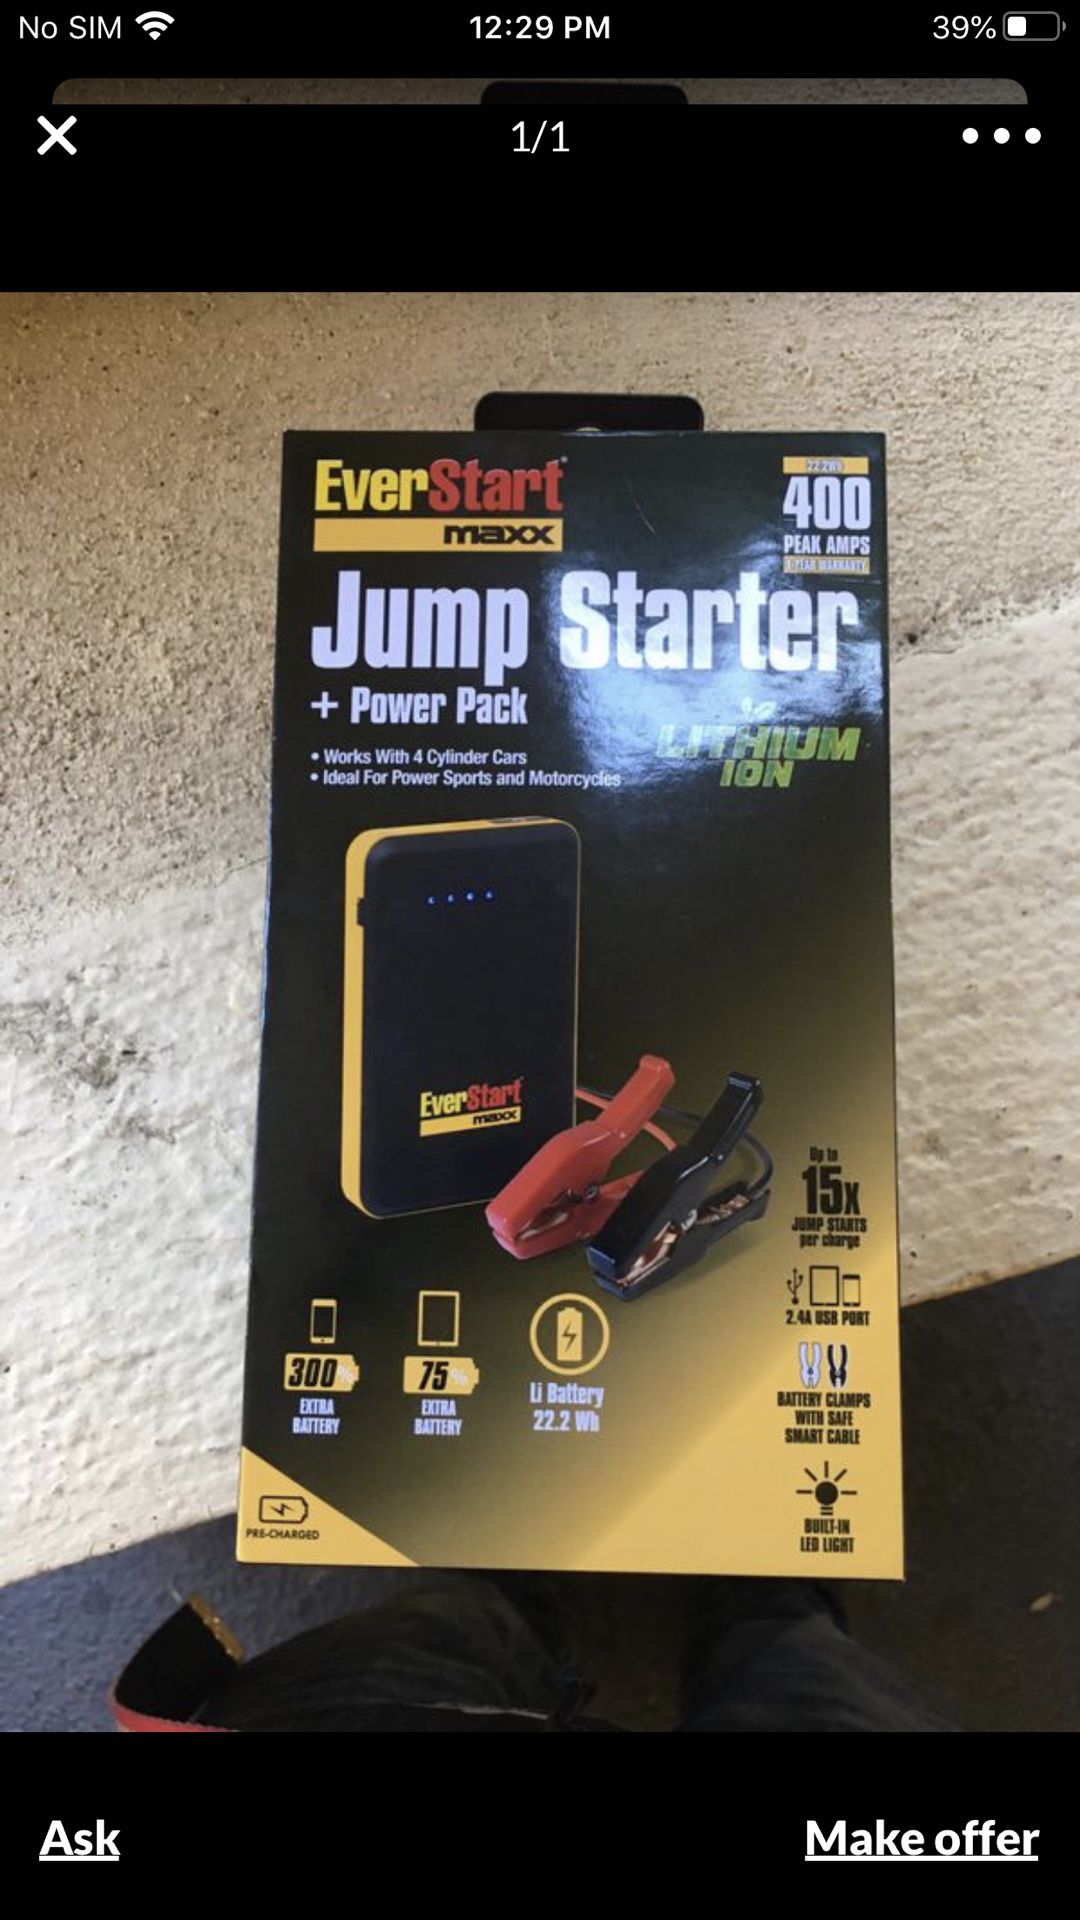 EVERSTART JUMP STARTER + POWER PACK